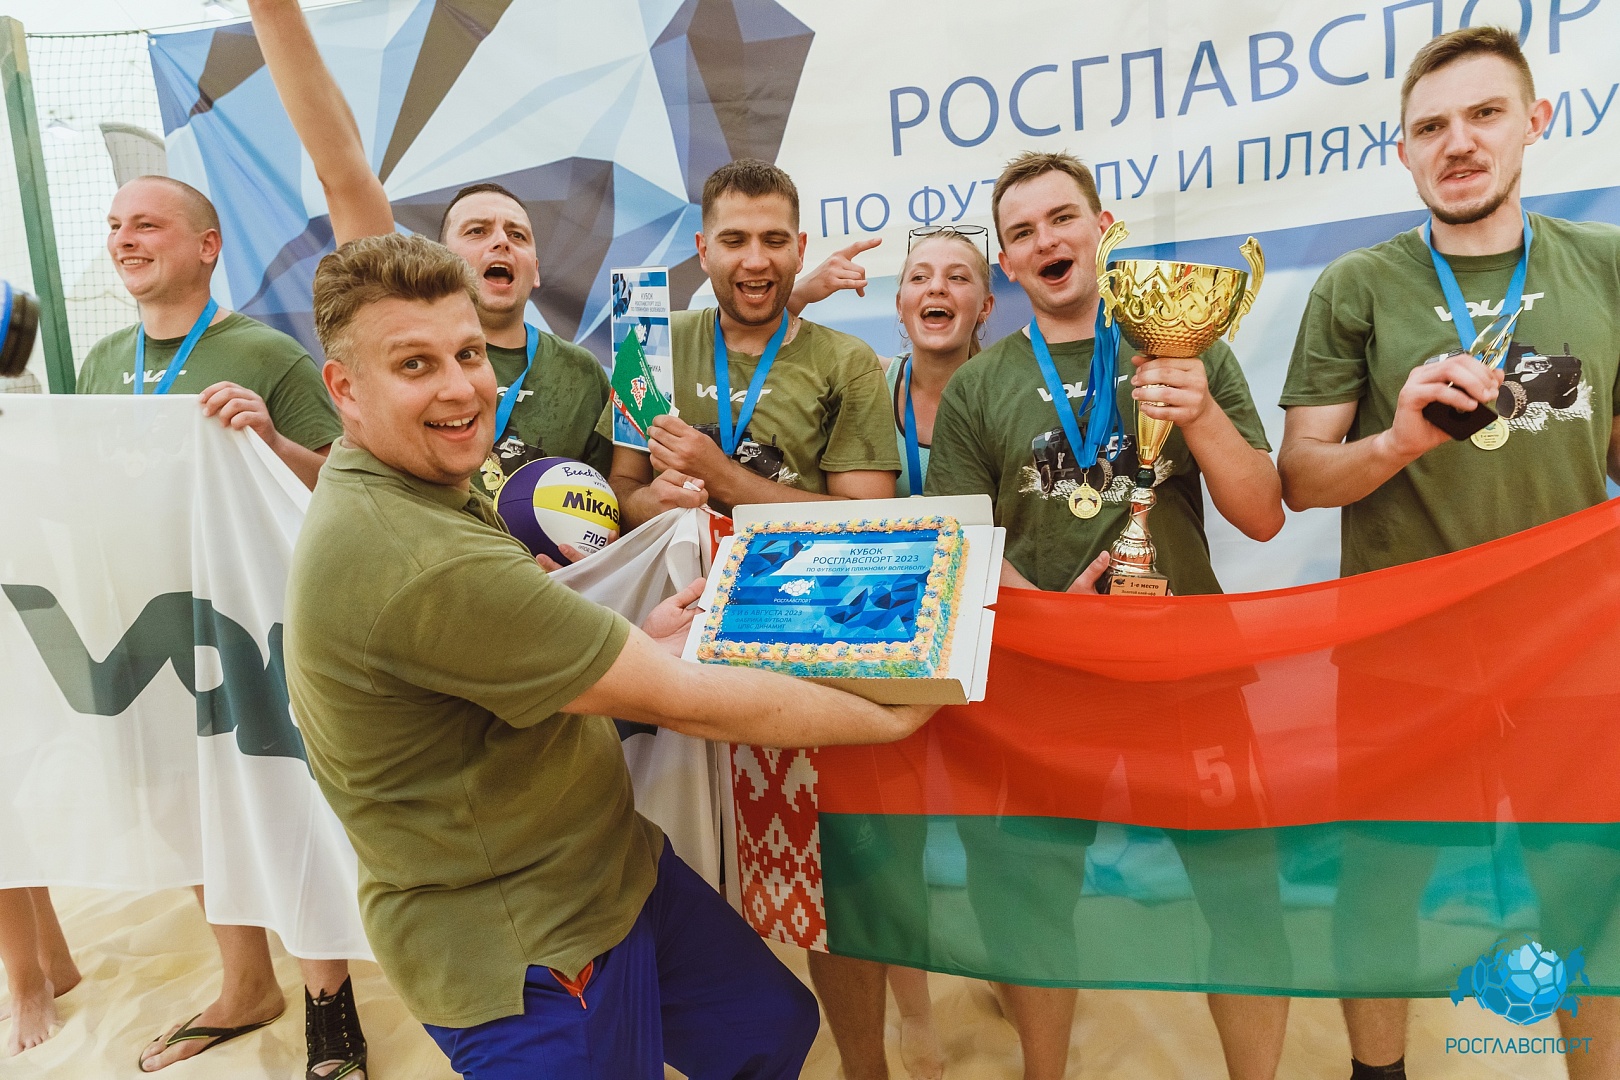 Корпоративный турнир по пляжному волейболу «Кубок Росглавспорт 2023» в Фабрике Футбола